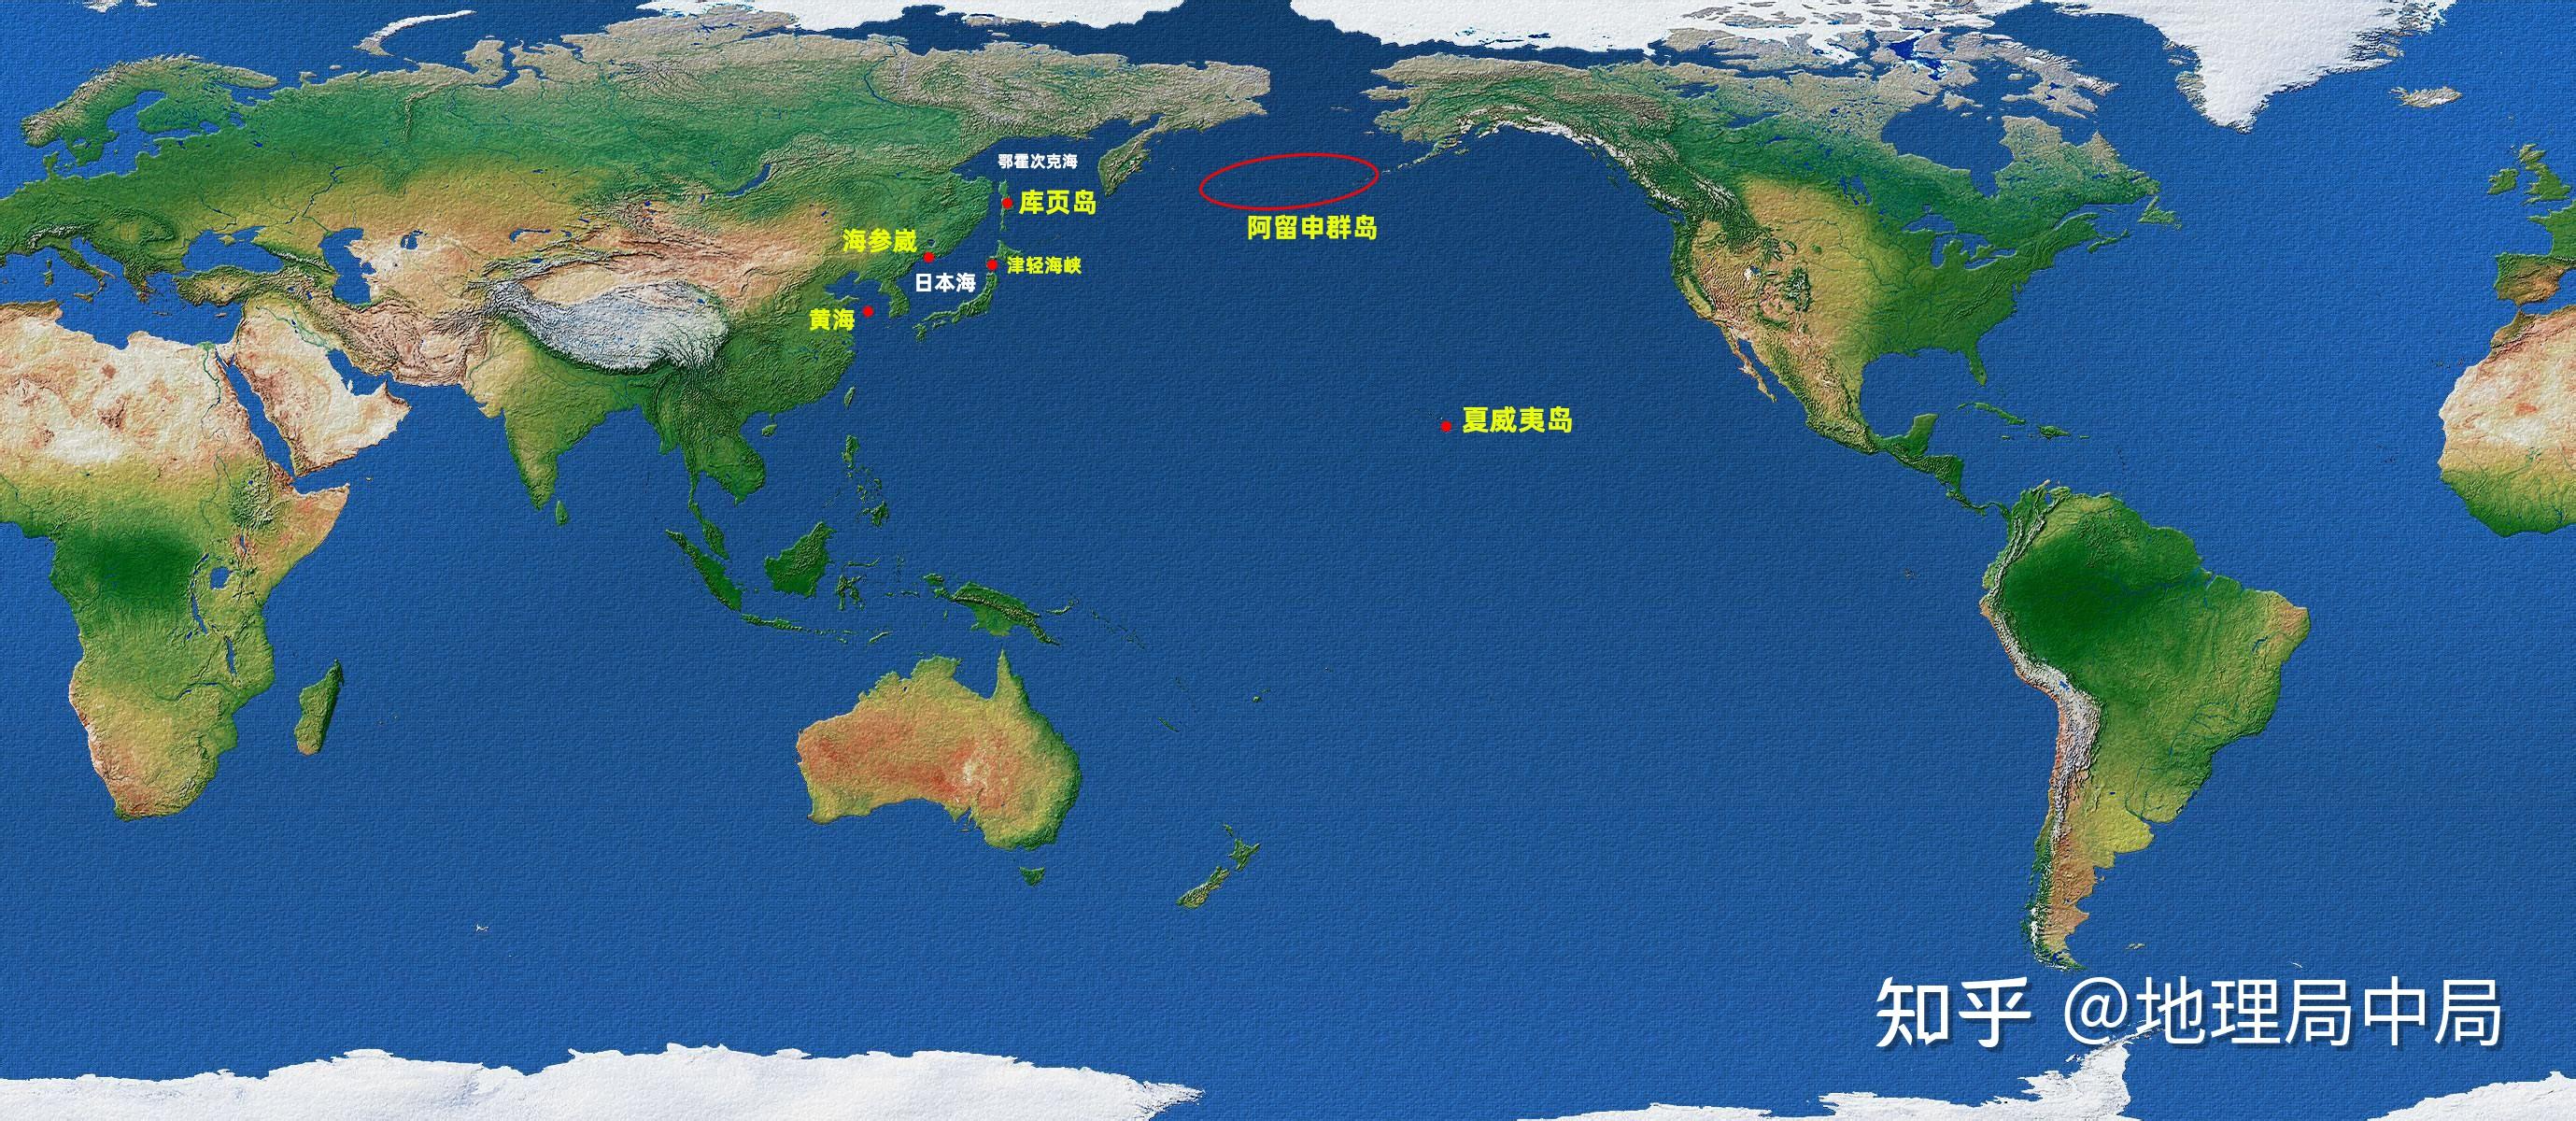 852公里)从地图上可以看到,津轻海峡的位置处于日本核心,这里最窄处仅